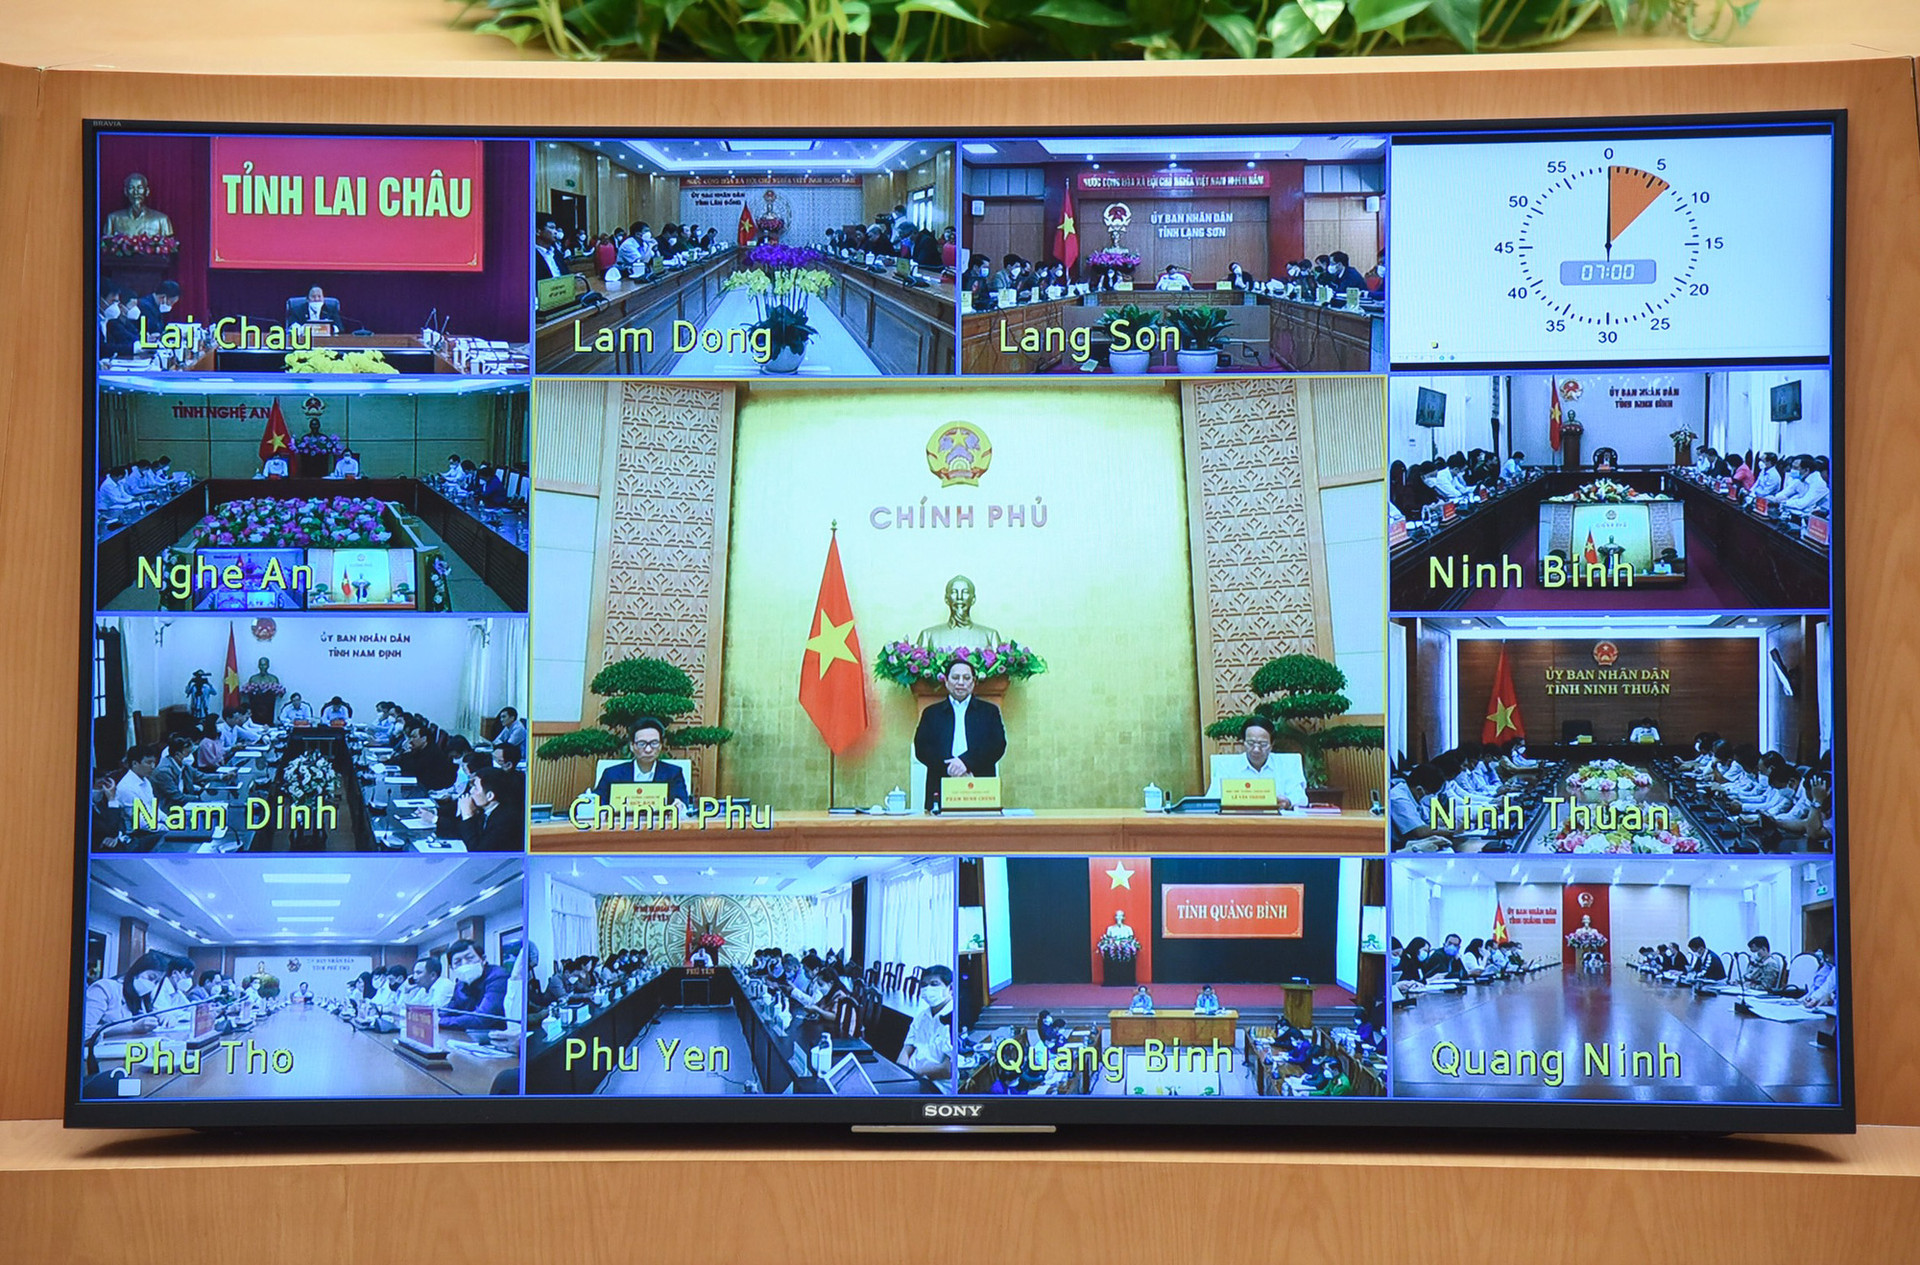 Thủ tướng Phạm Minh Chính: Triển khai các nhiệm vụ trọng tâm, trọng điểm, làm việc nào dứt việc đó - Ảnh 2.